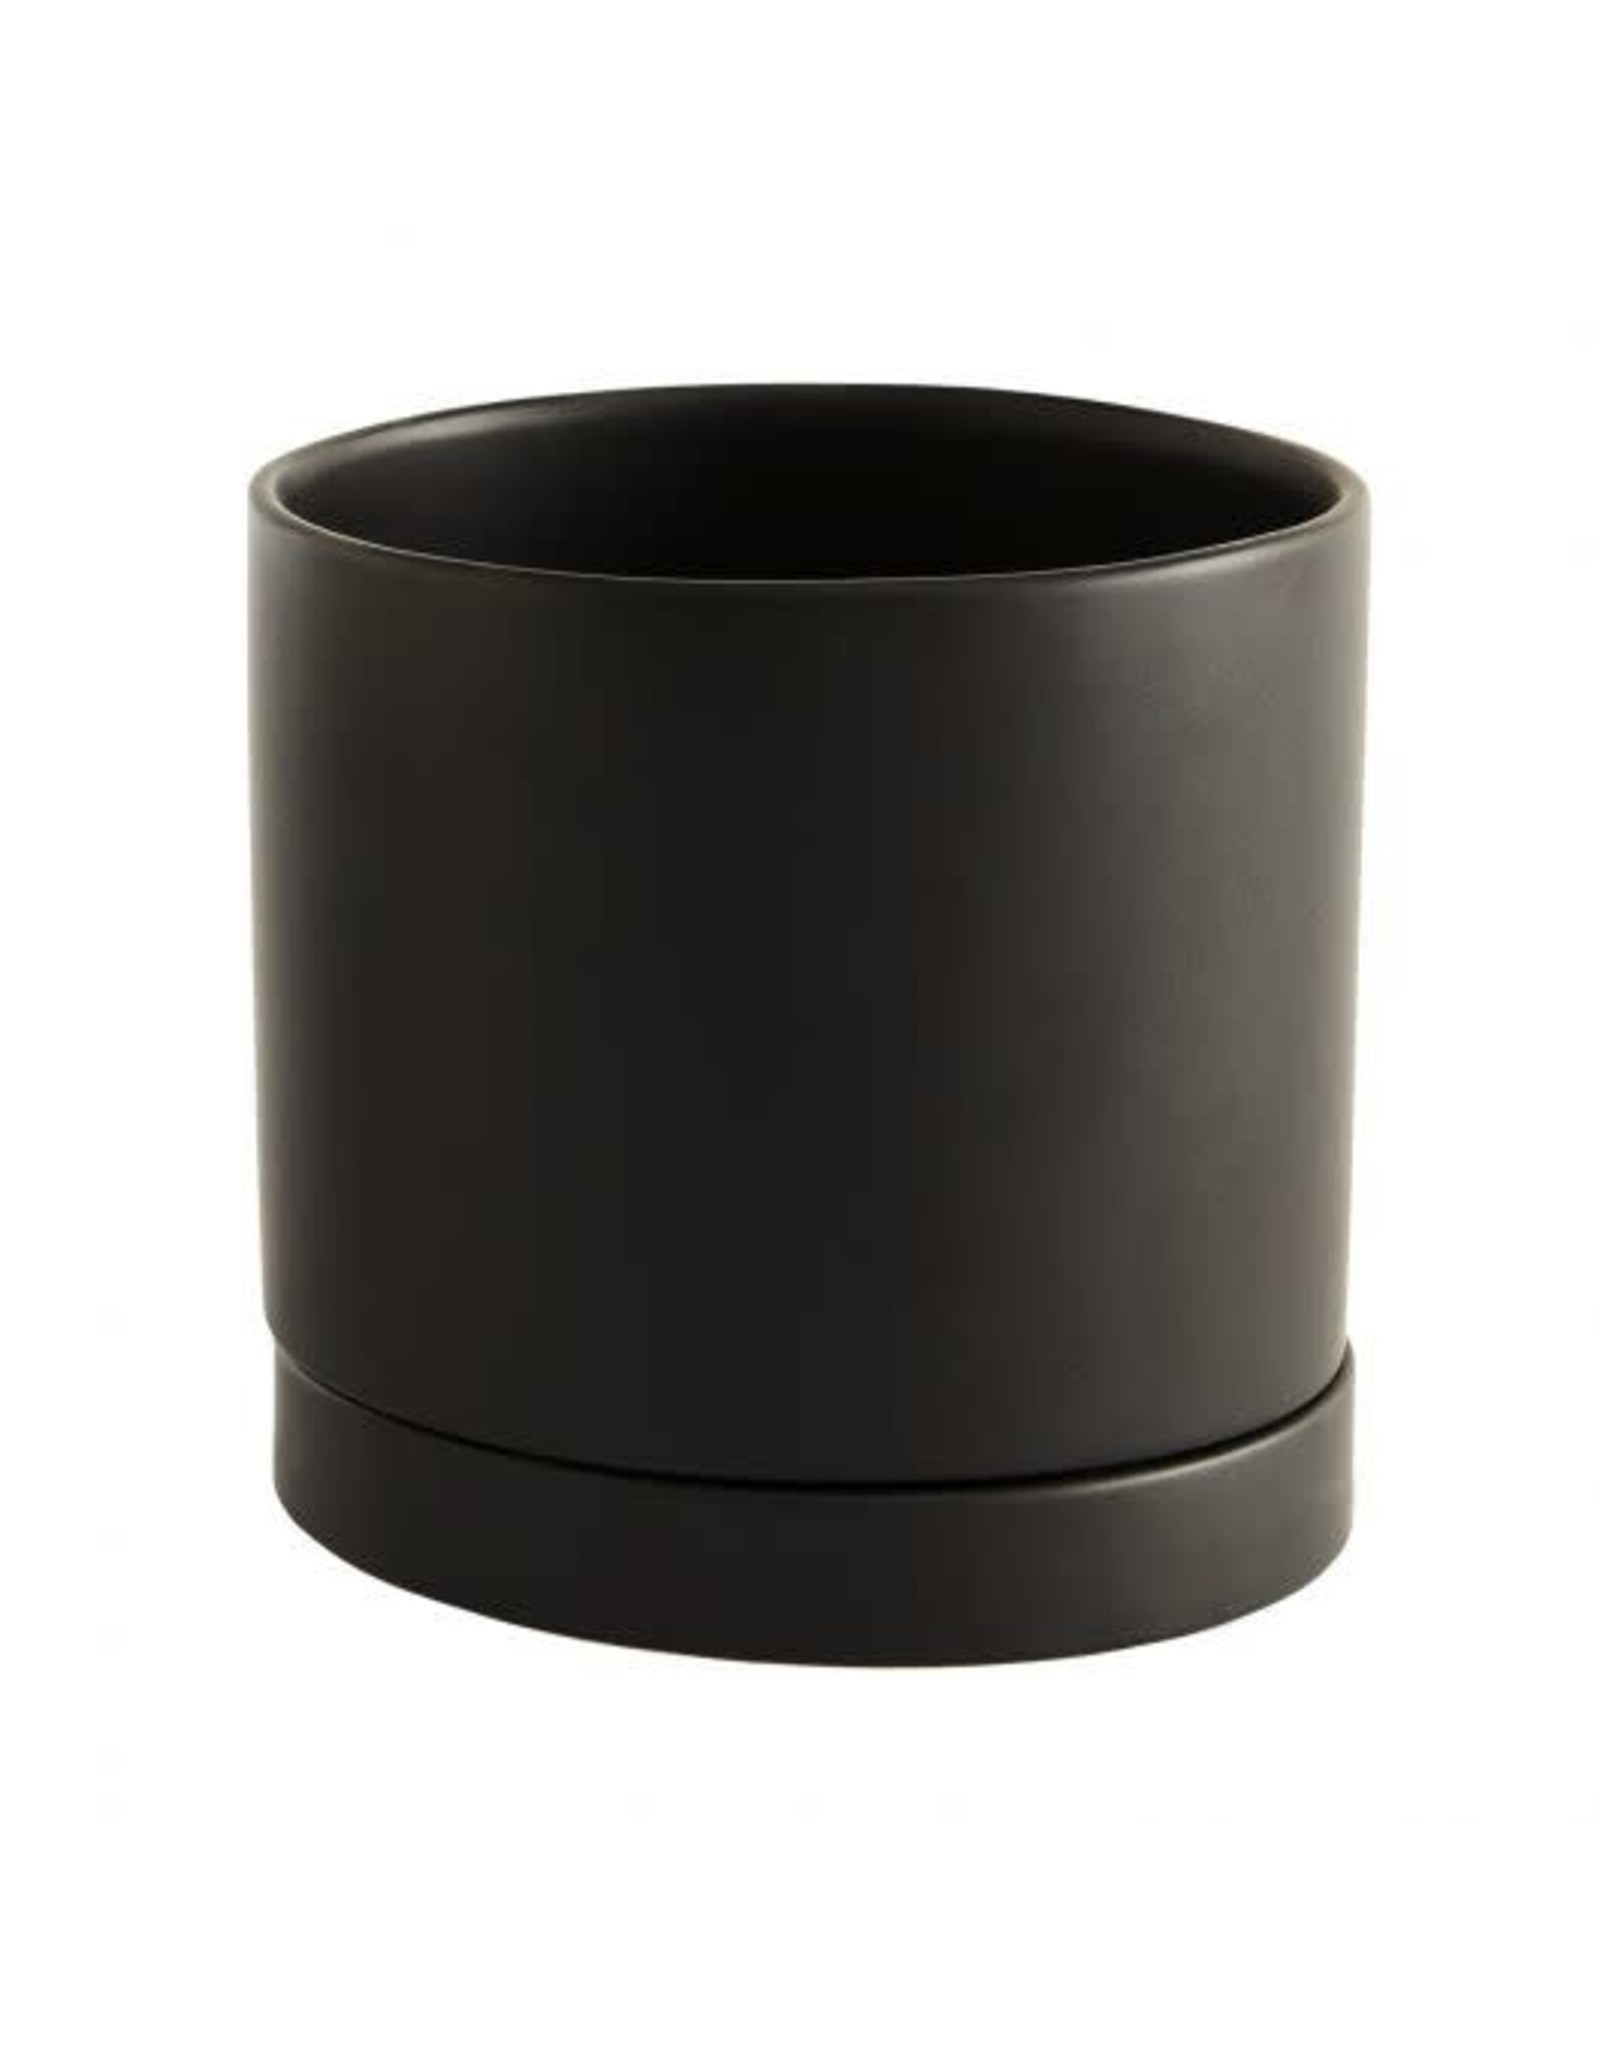 Romey Pot - 7.25" x 7" - Black